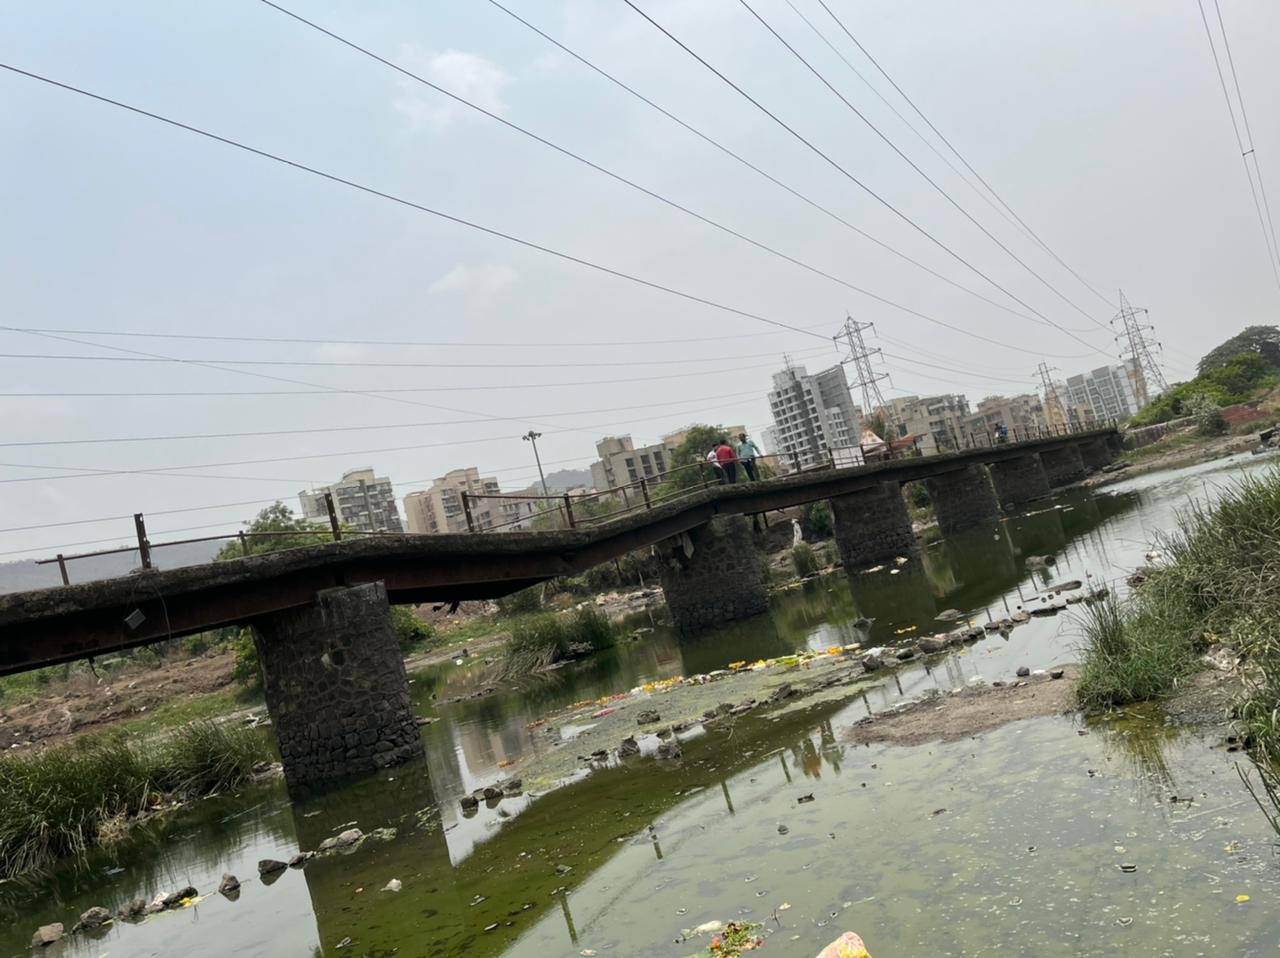 रामेश्वर आंग्रेचा पूल दुरुस्तीसाठी पारेषण टाटा पॉवर कंपनीकडे सुरु होता पाठपुरावा